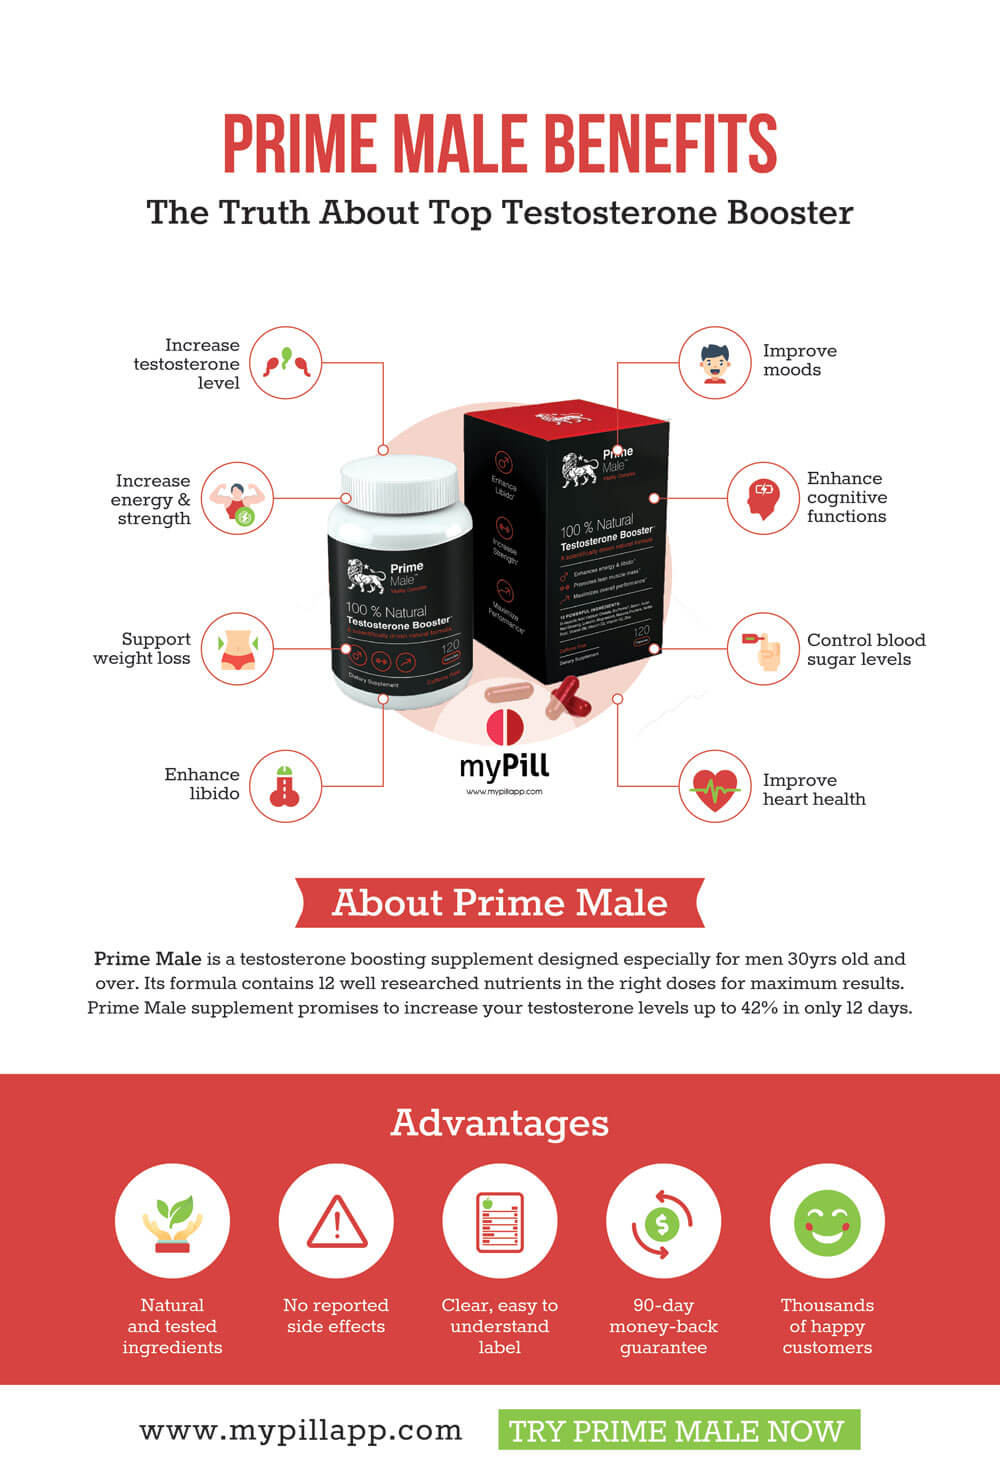 Prime Male benefits